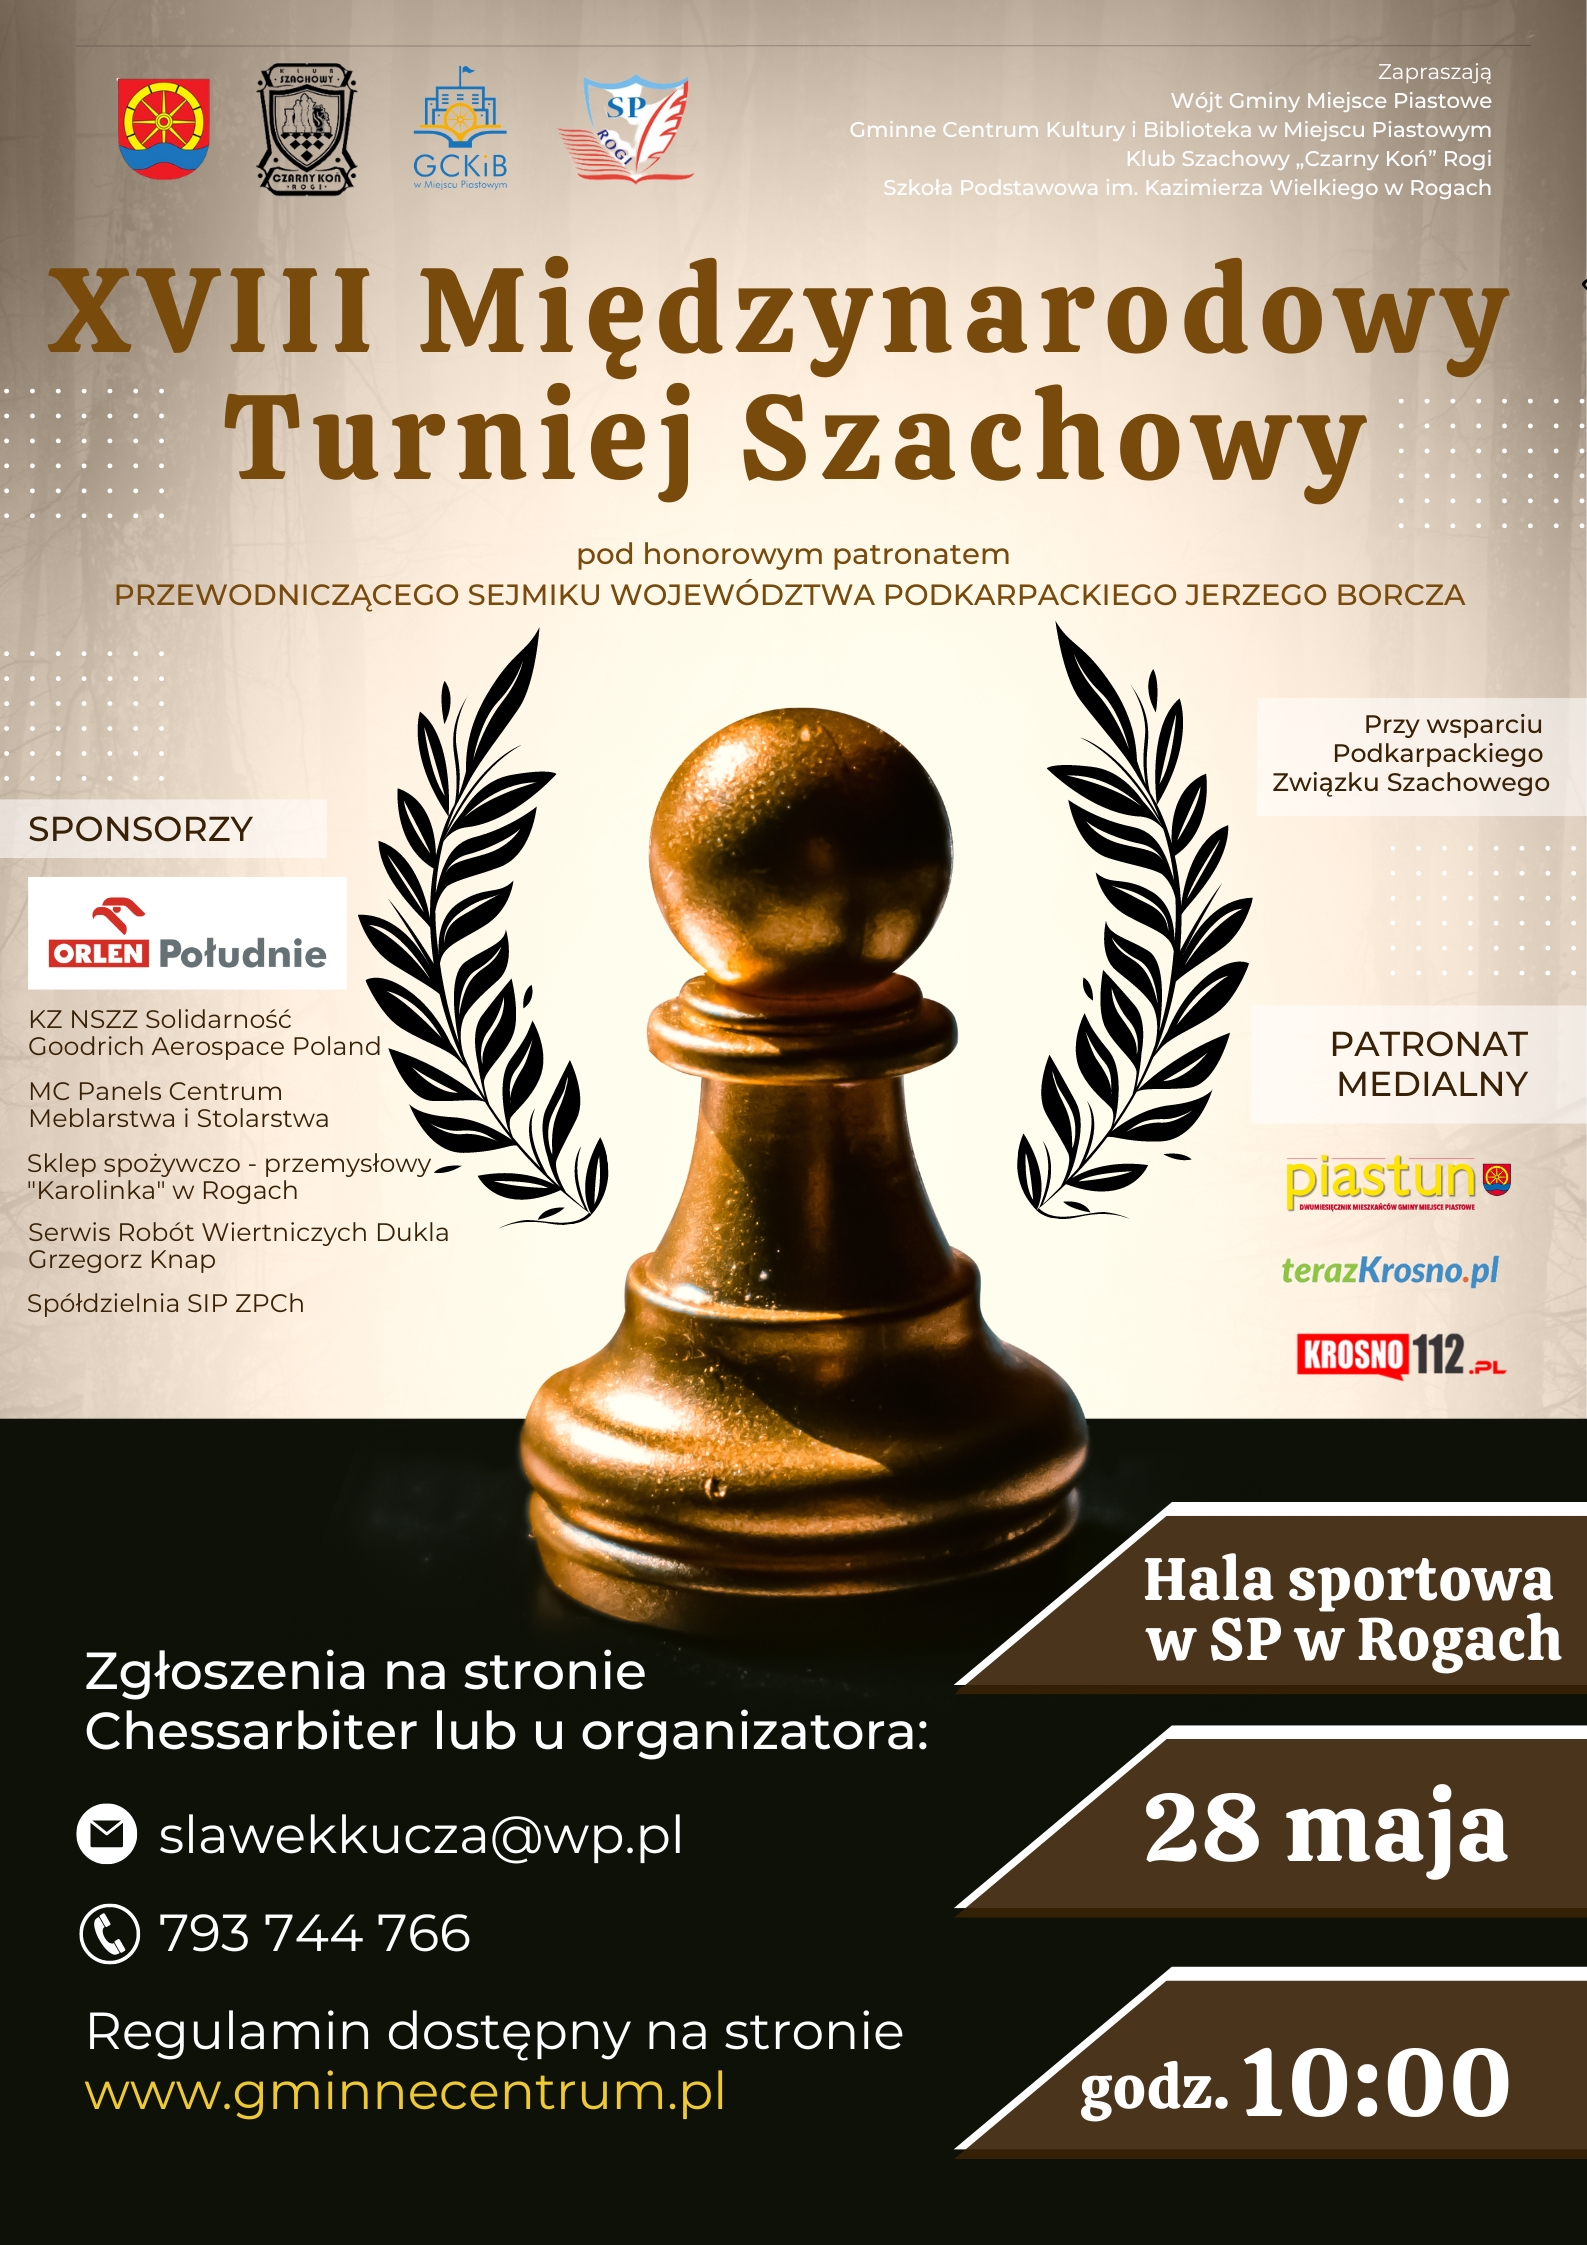 You are currently viewing XVIII Międzynarodowy Turniej Szachowy